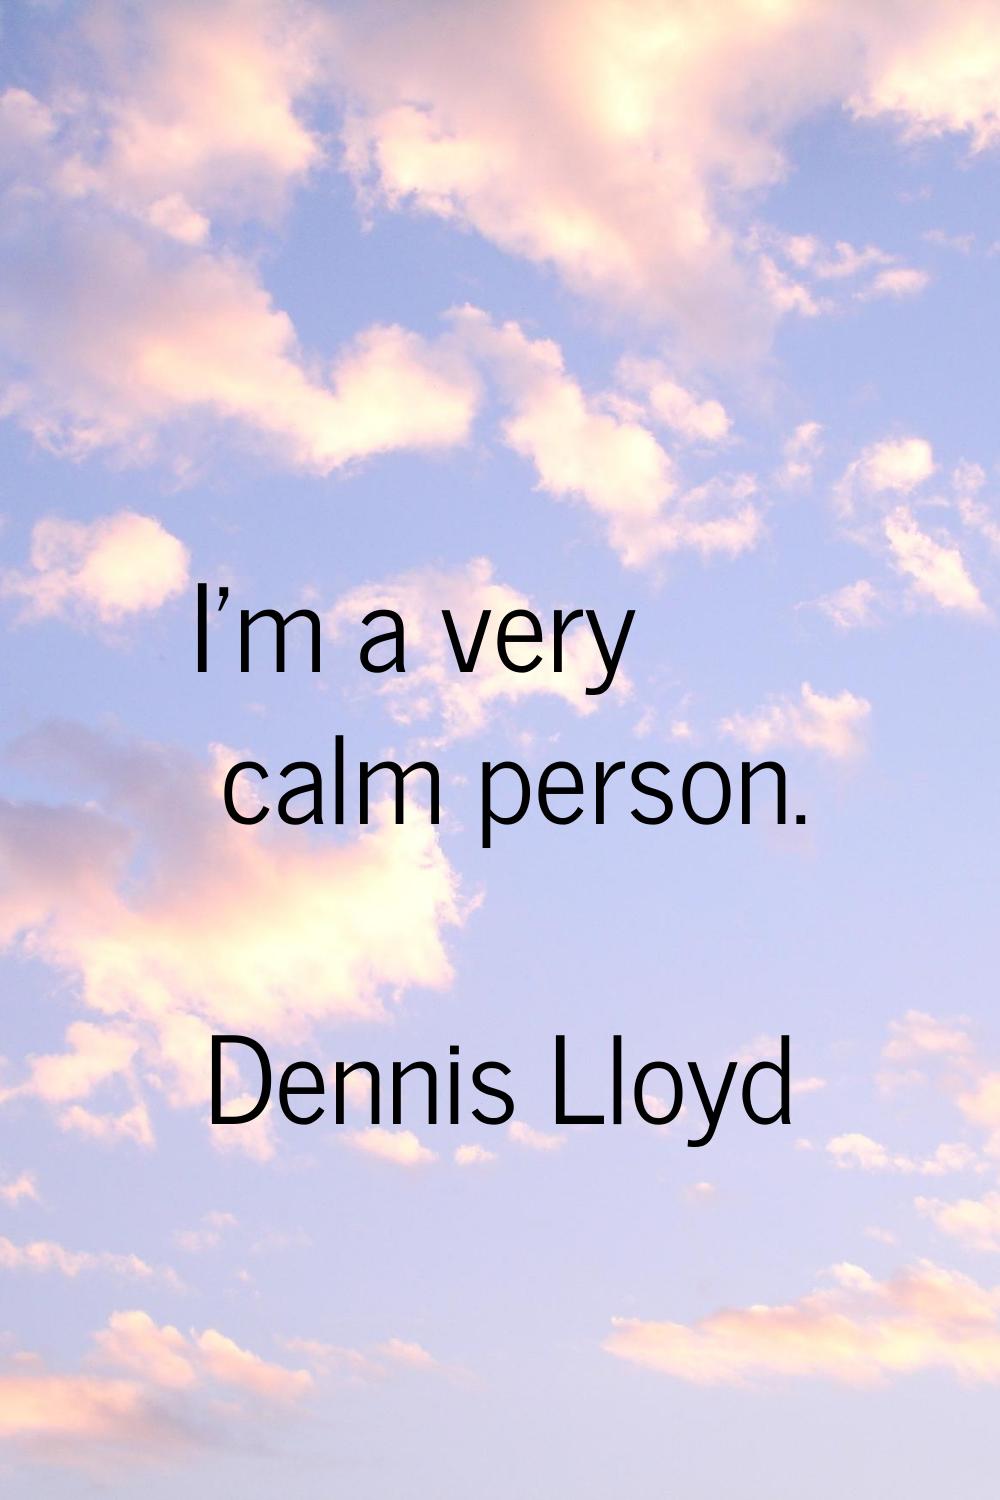 I'm a very calm person.